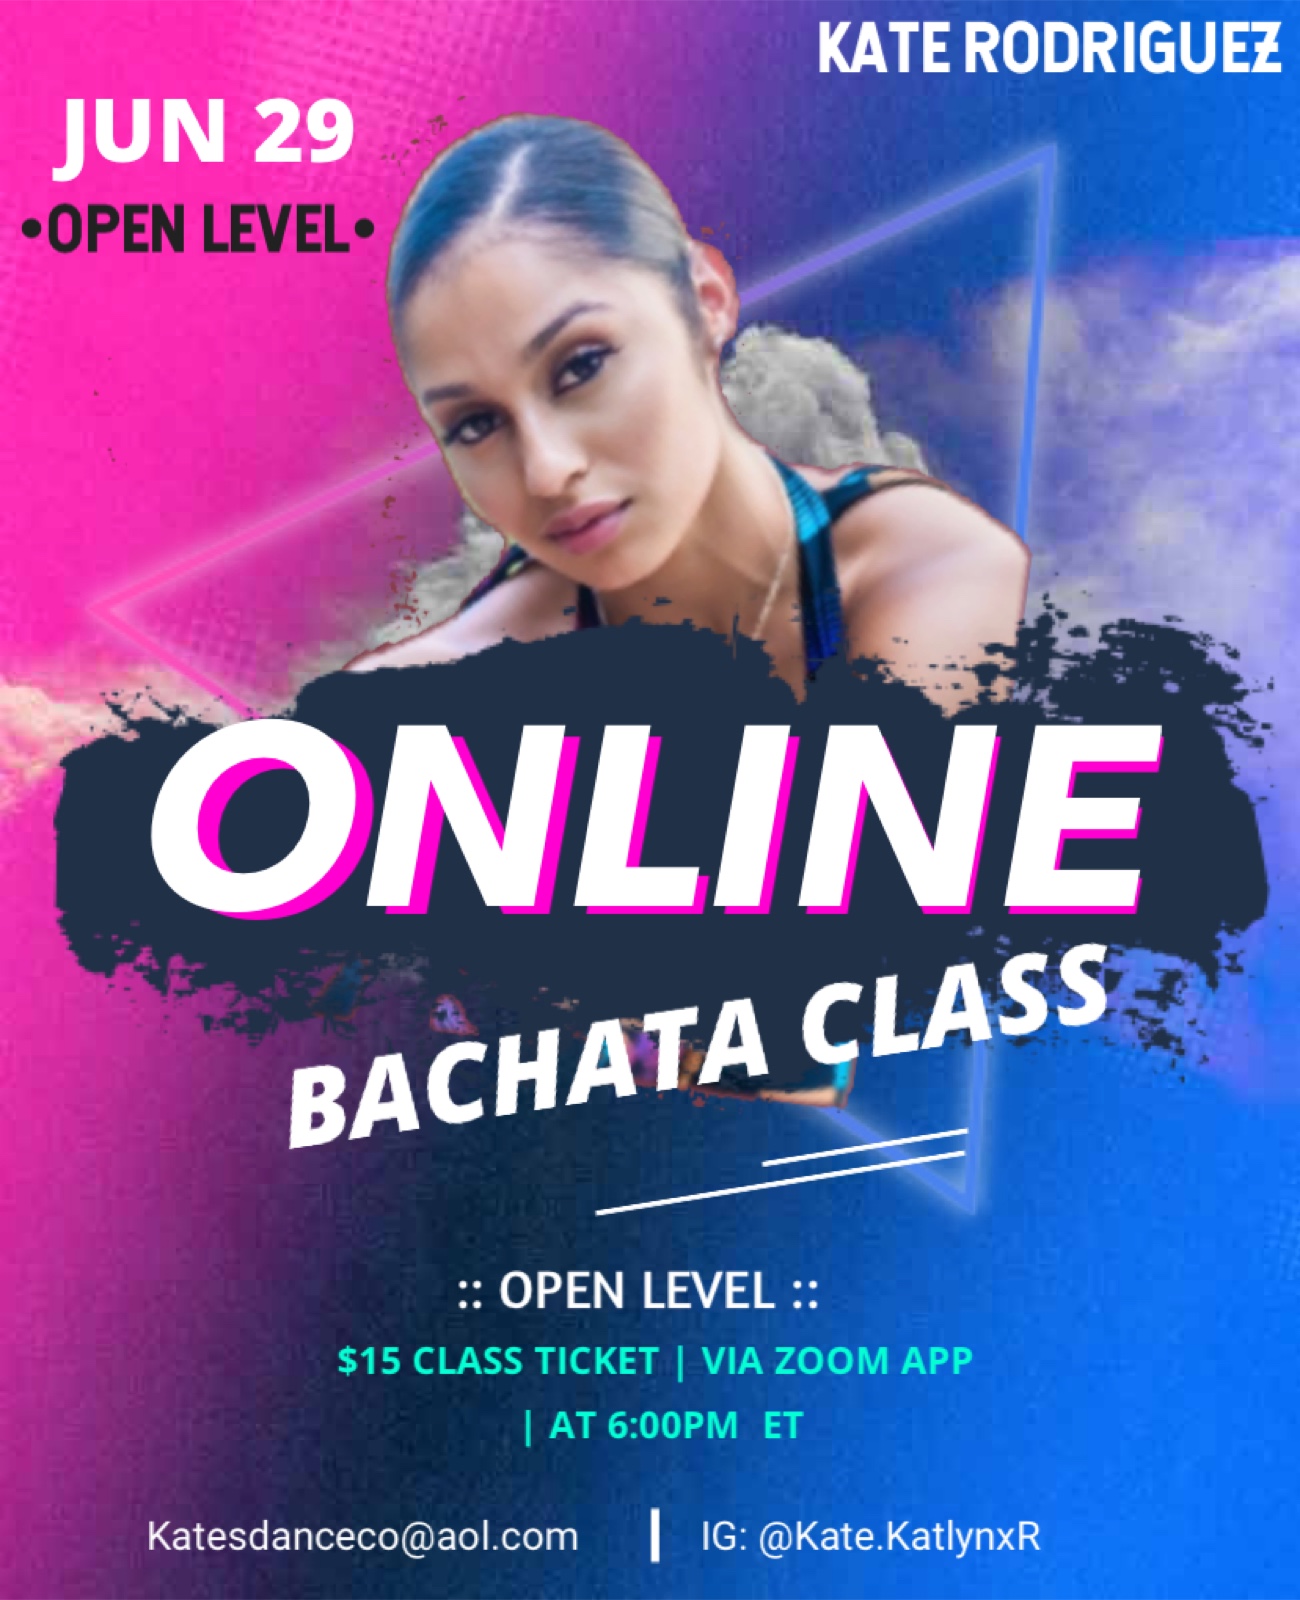 Kate's Virtual Bachata Class